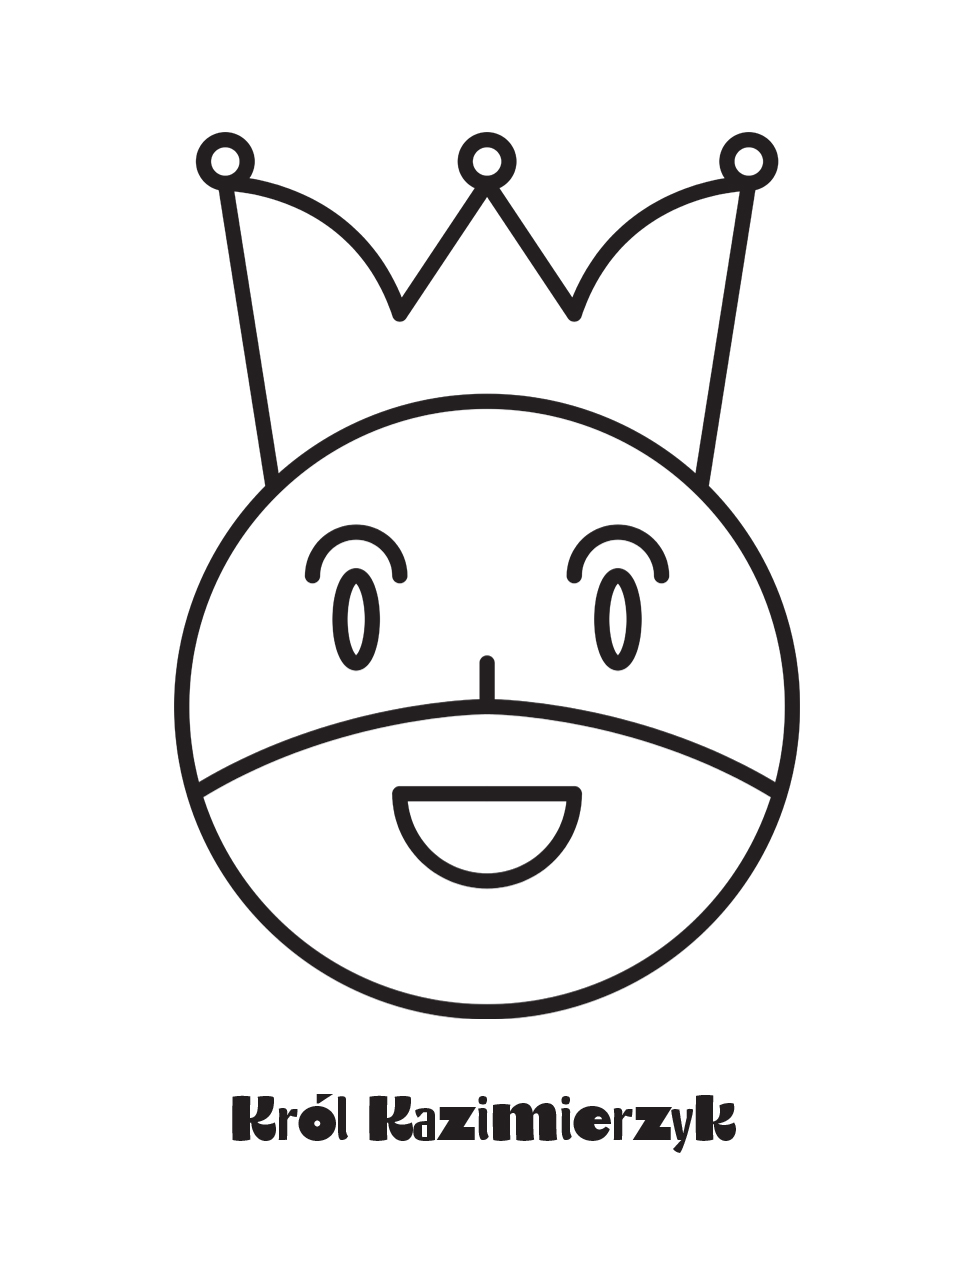 krol king t-shirt koszulka minimalizm Minimalism lublin Kazimierz Dolny polska Pamiątka z Kazimierza